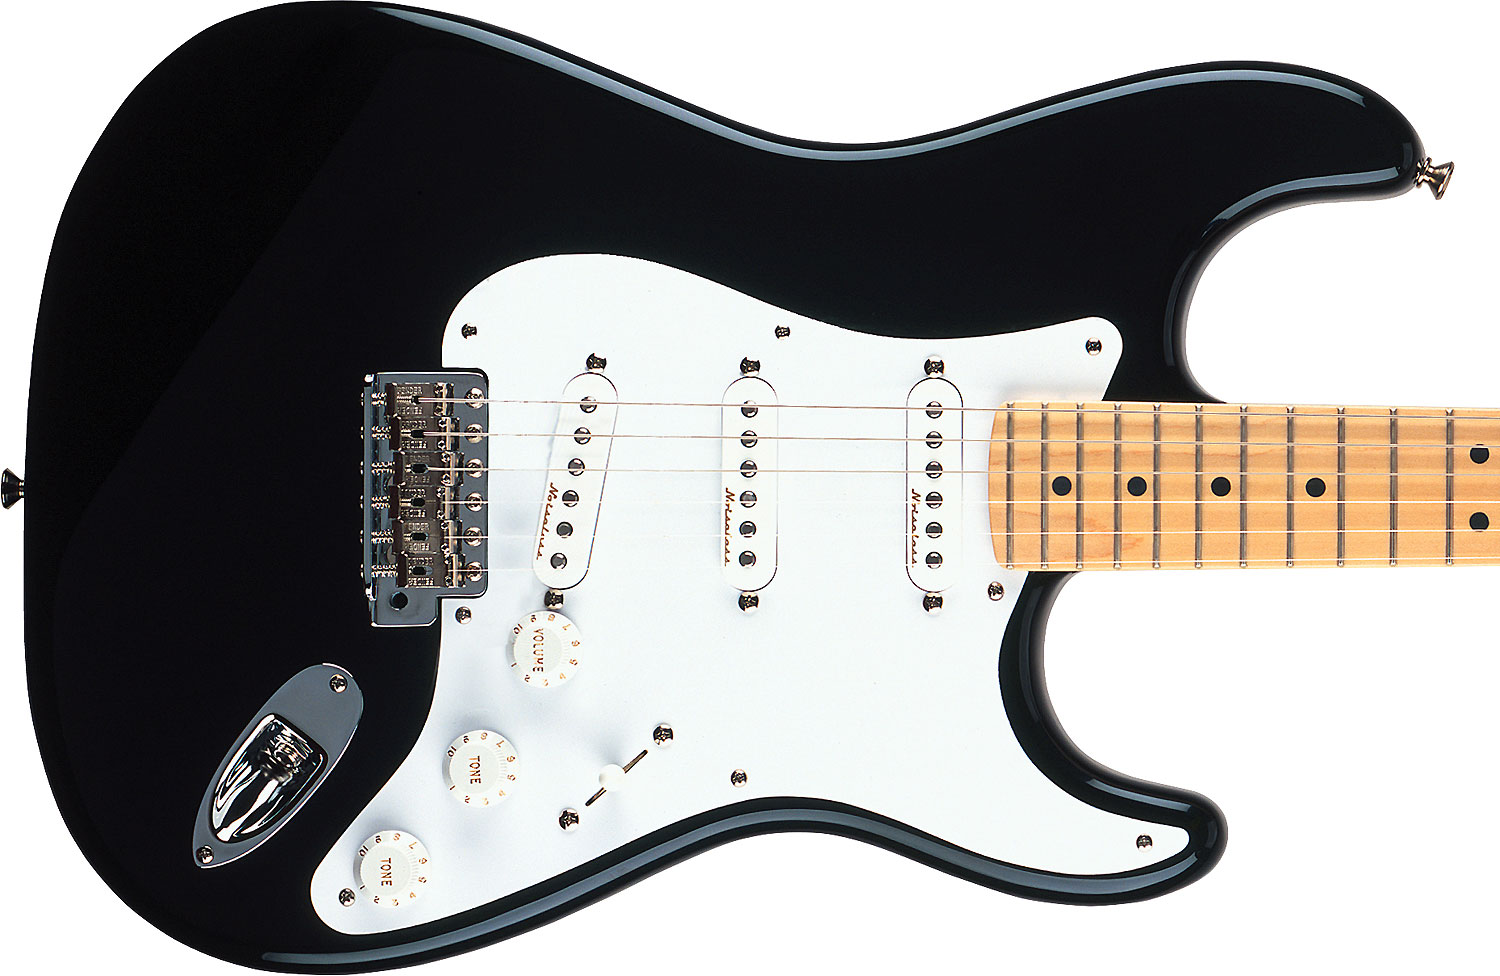 Fender Strat Eric Clapton Usa Signature 3s Trem Mn - Black - Elektrische gitaar in Str-vorm - Variation 2